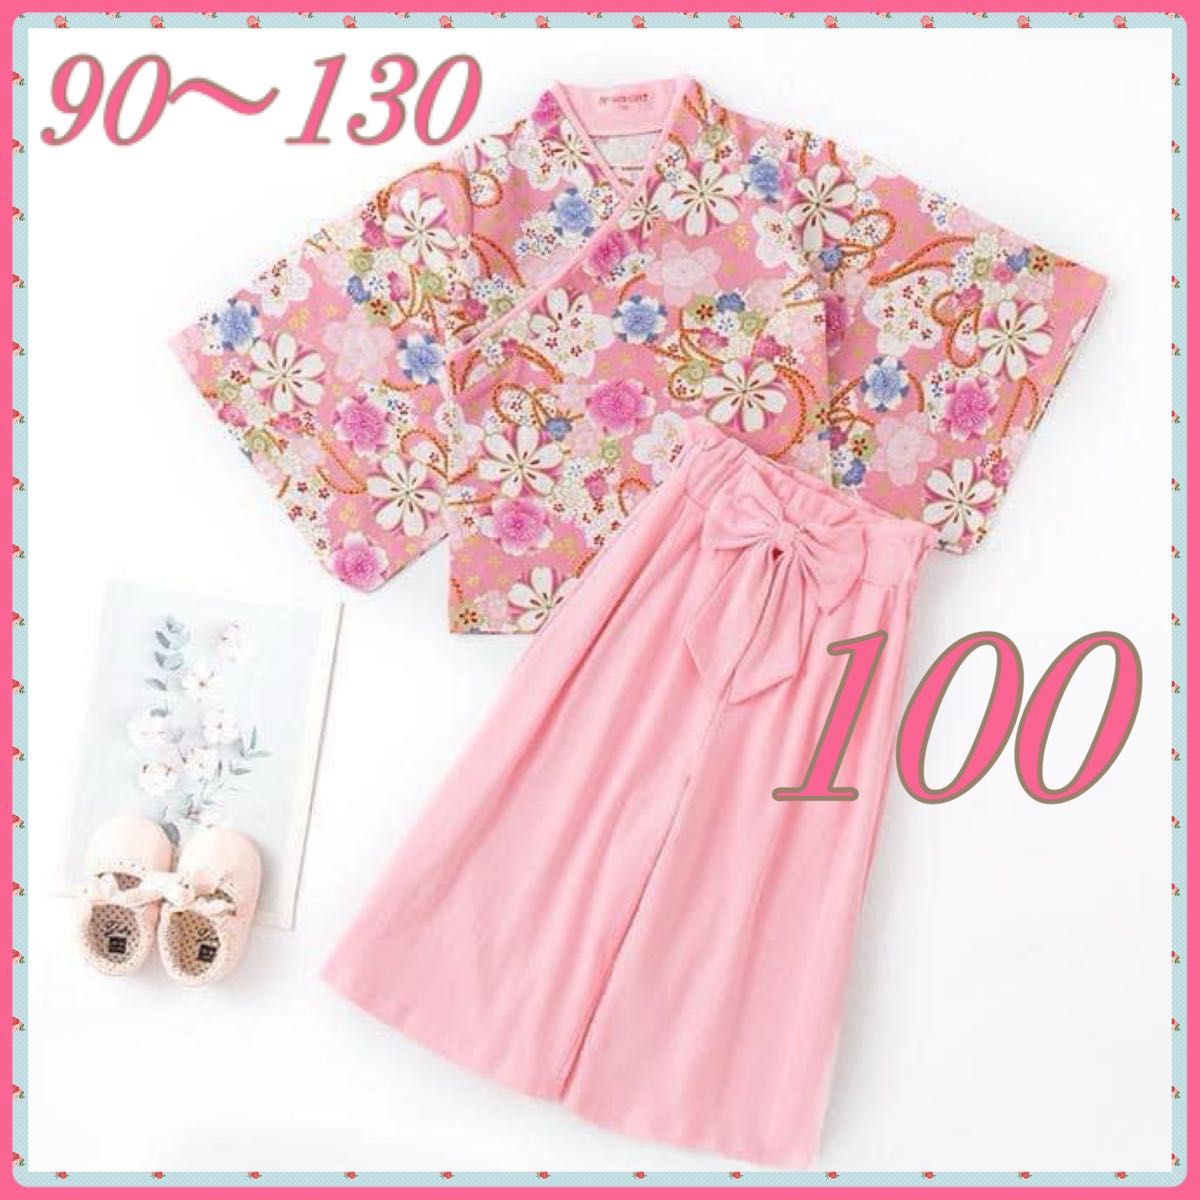  袴 セットアップ  100 桜  着物 和装 フォーマル 女の子